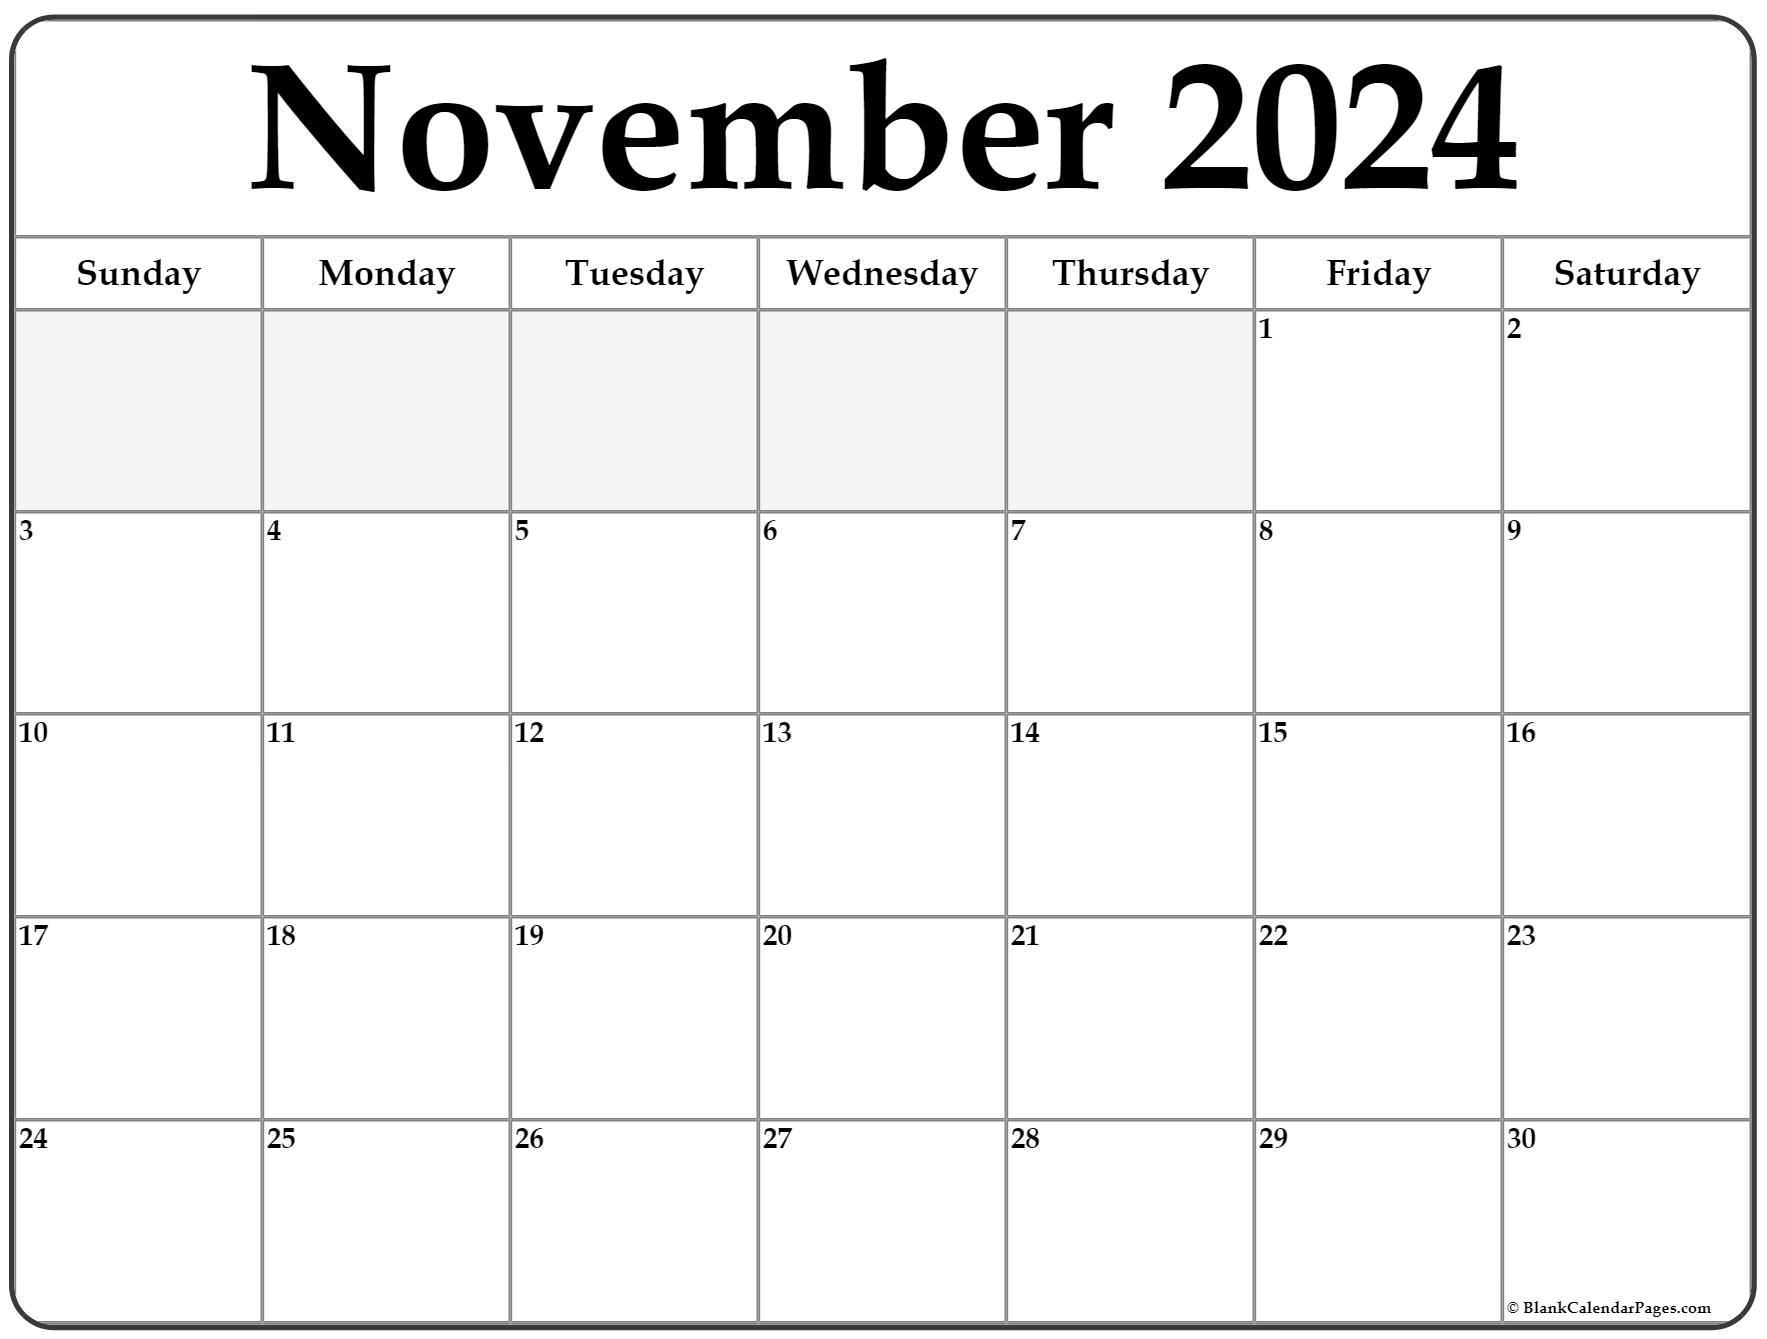 November Blank Calendar 2022 November 2022 Calendar | Free Printable Calendar Templates